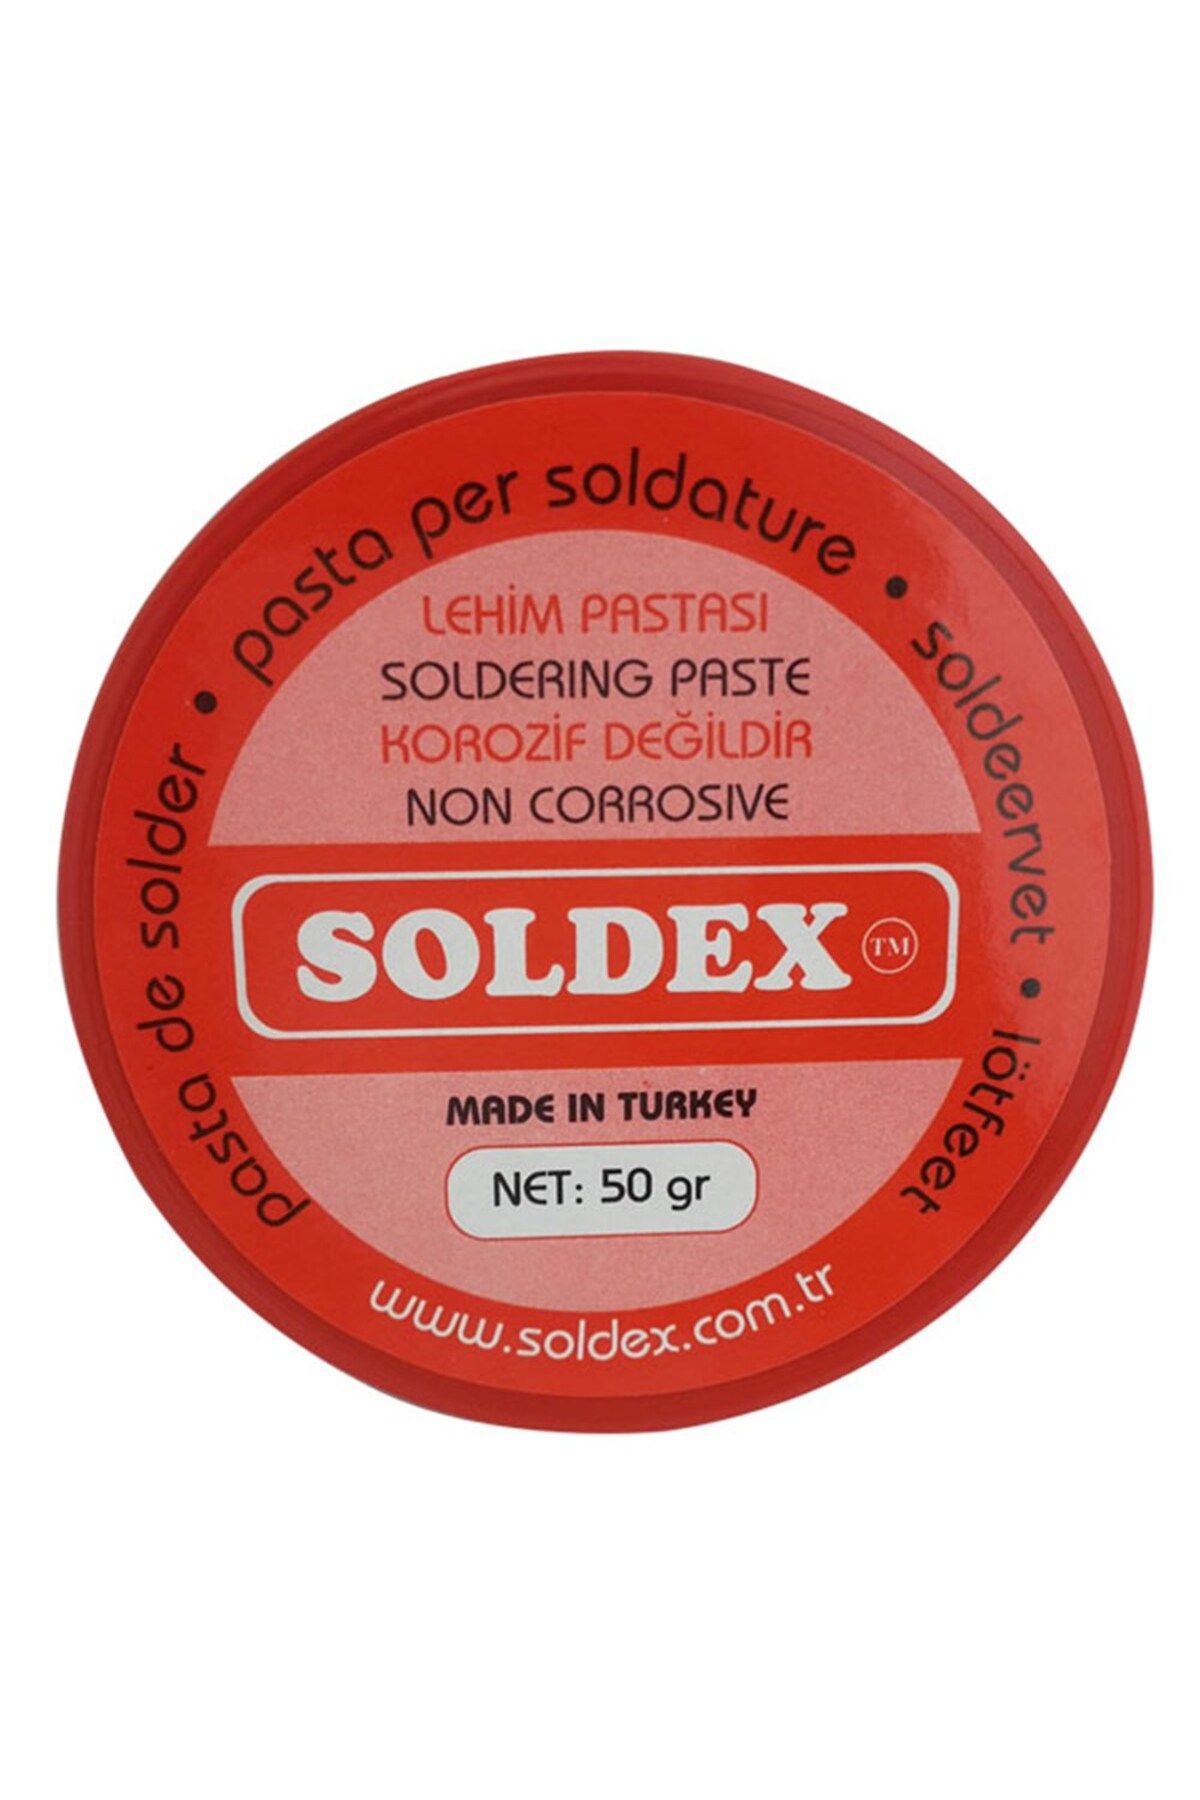 Soldex 50 gram Lehim Pastası